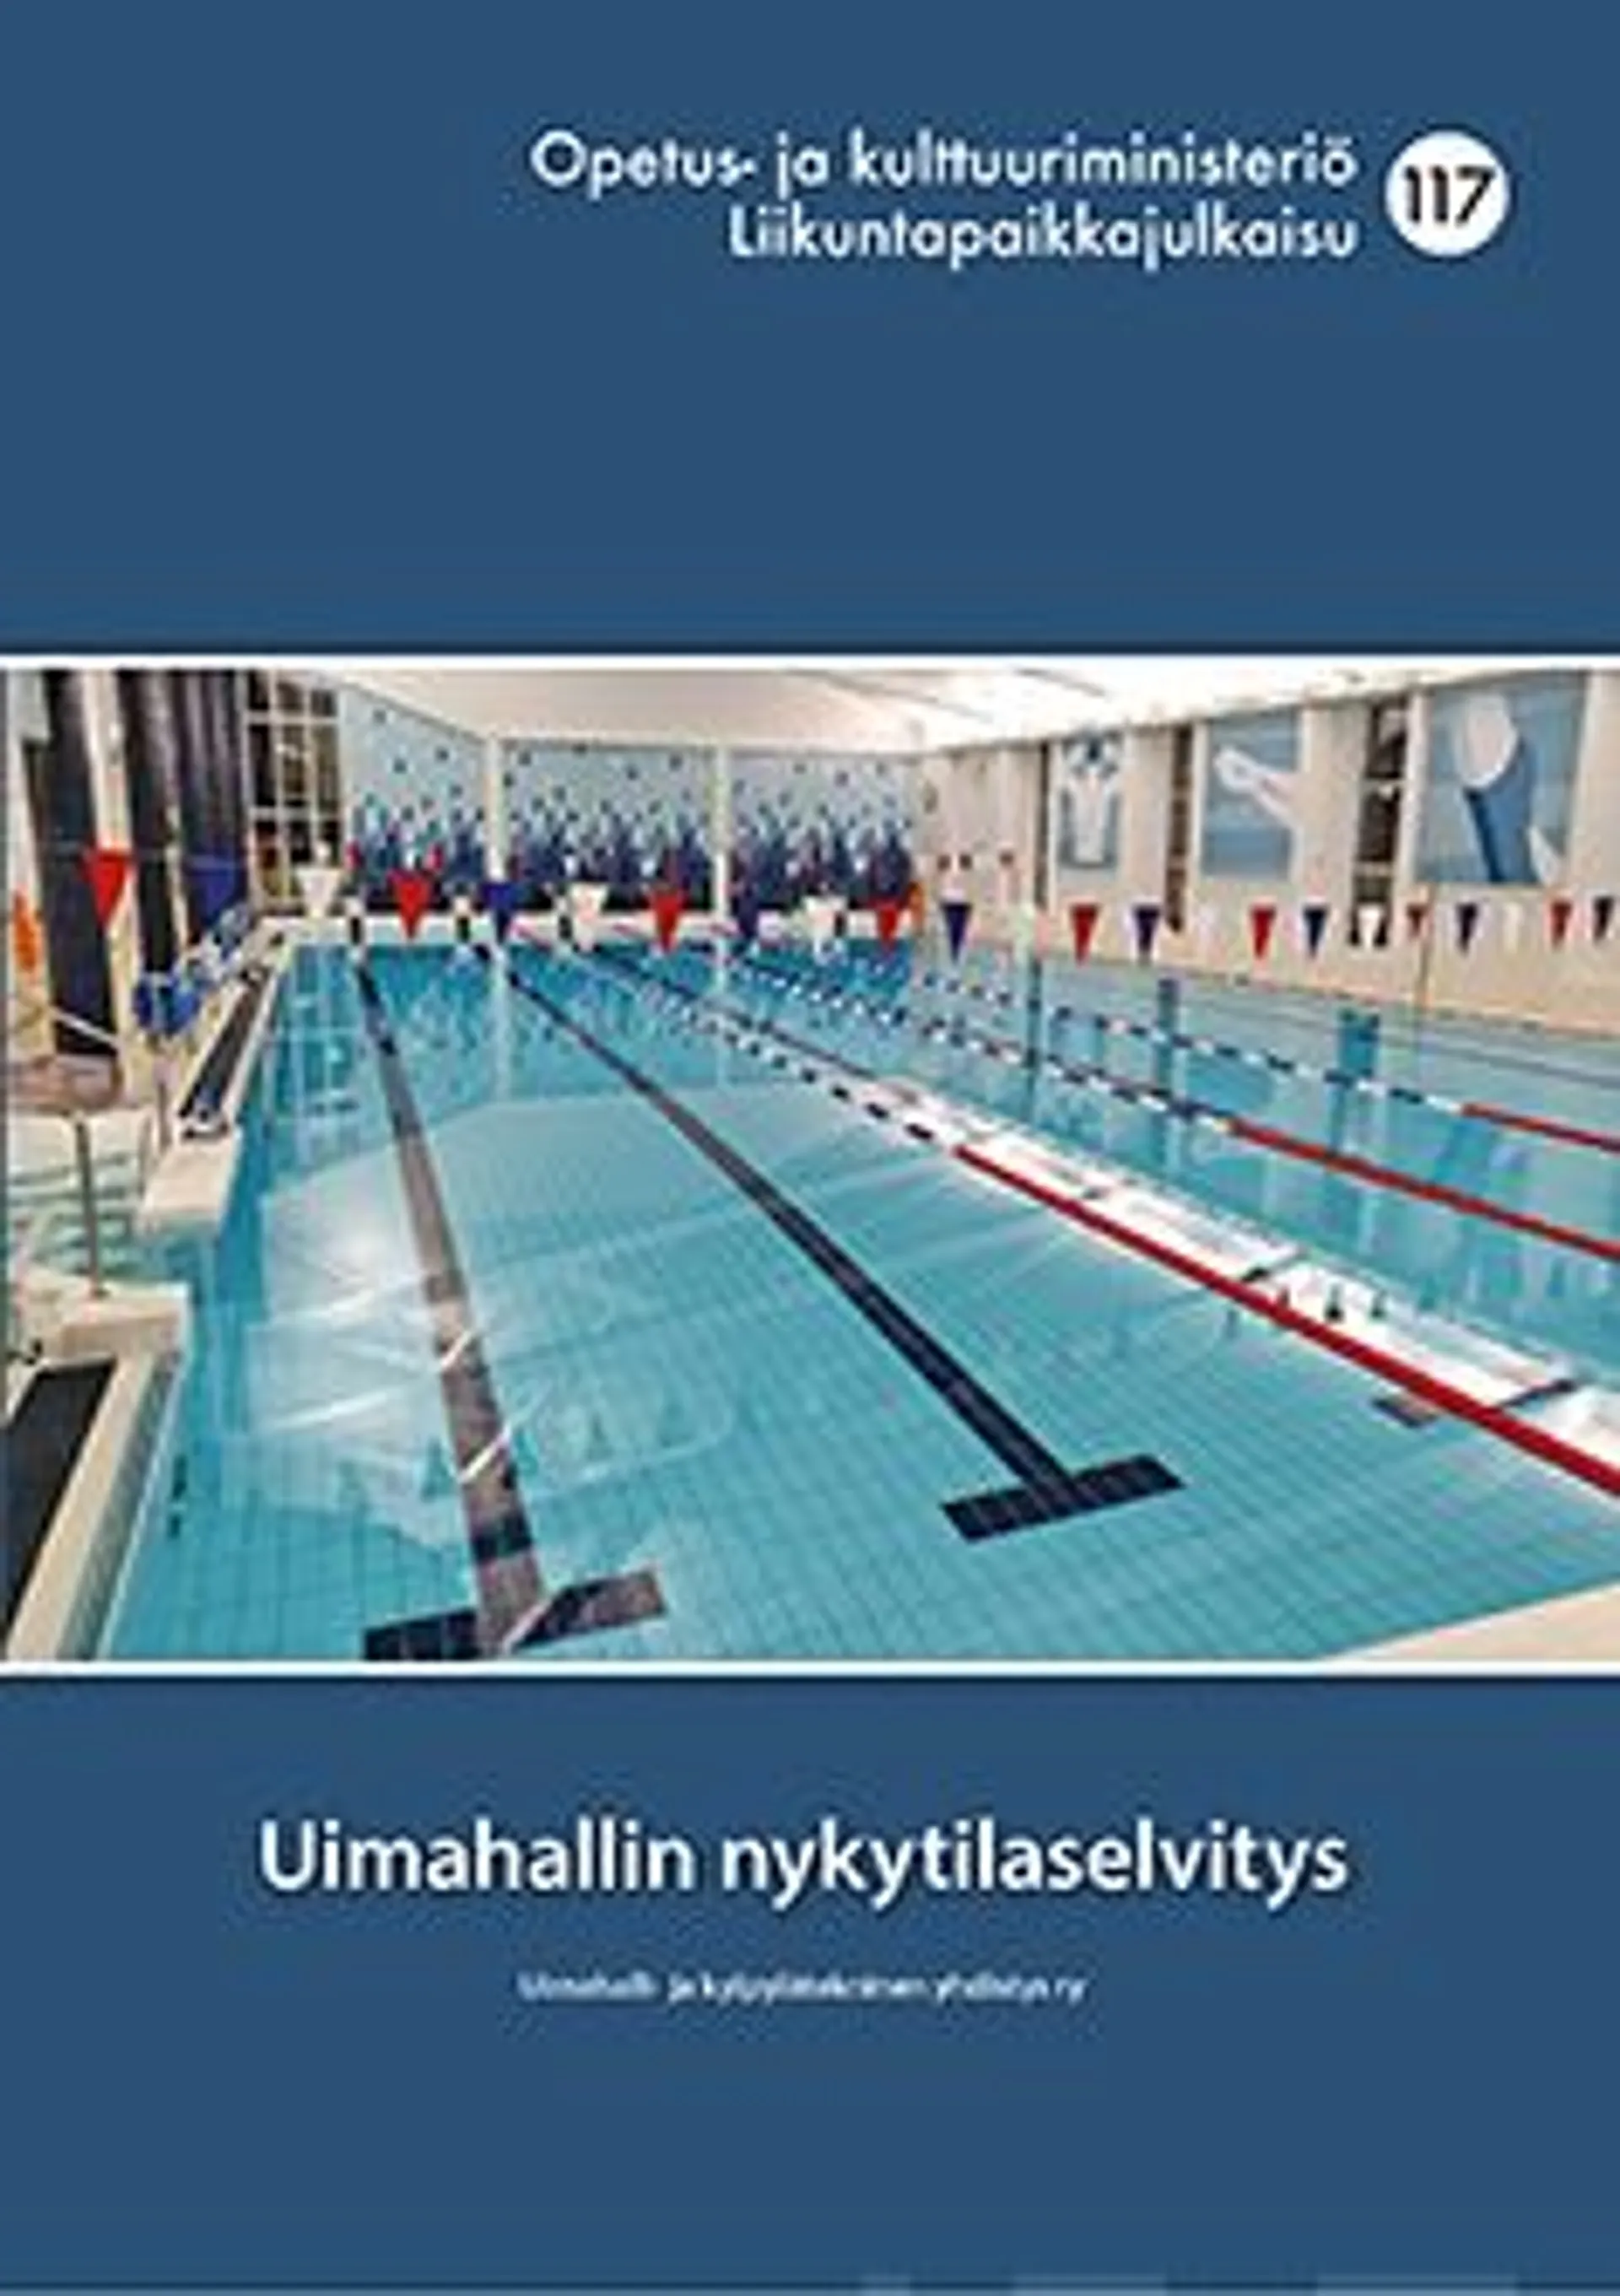 Uimahalli- ja kylpylätekninen yhdistys ry, Uimahallin nykytilaselvitys - Nro 117